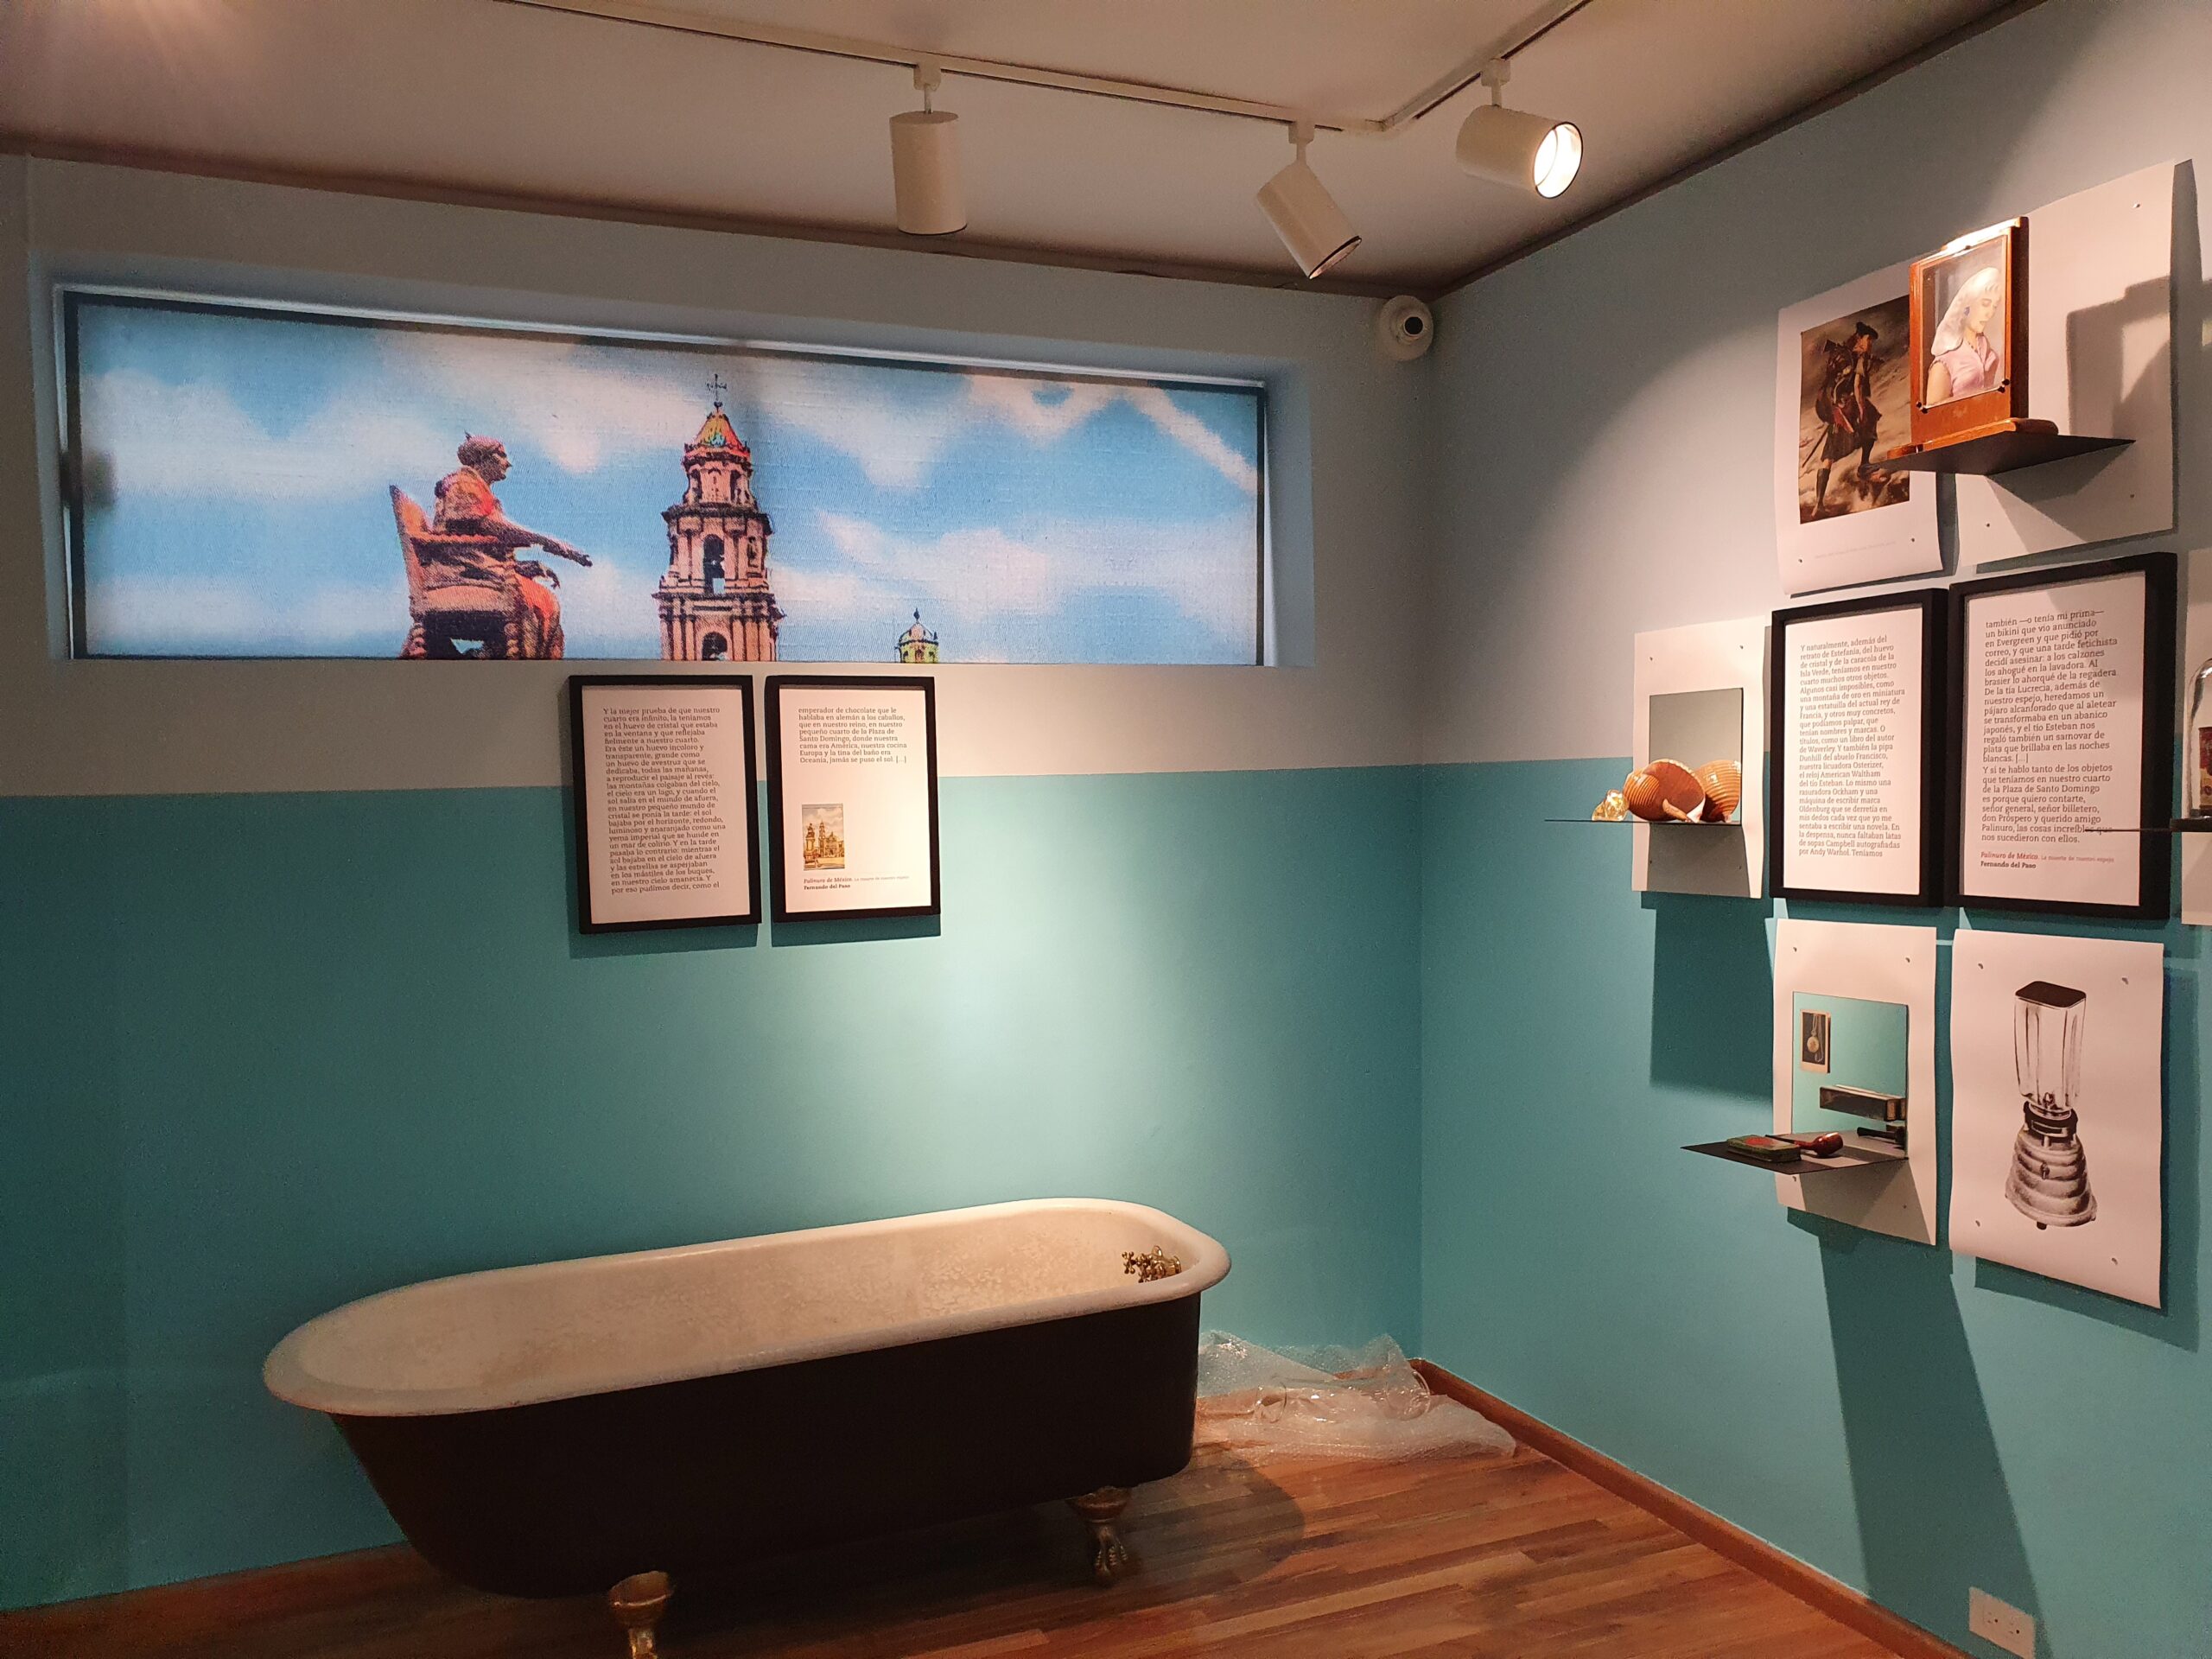 Sala en la que se puede observar una bañera y en las 
              paredes se muestran cuadros con textos e ilustraciones.